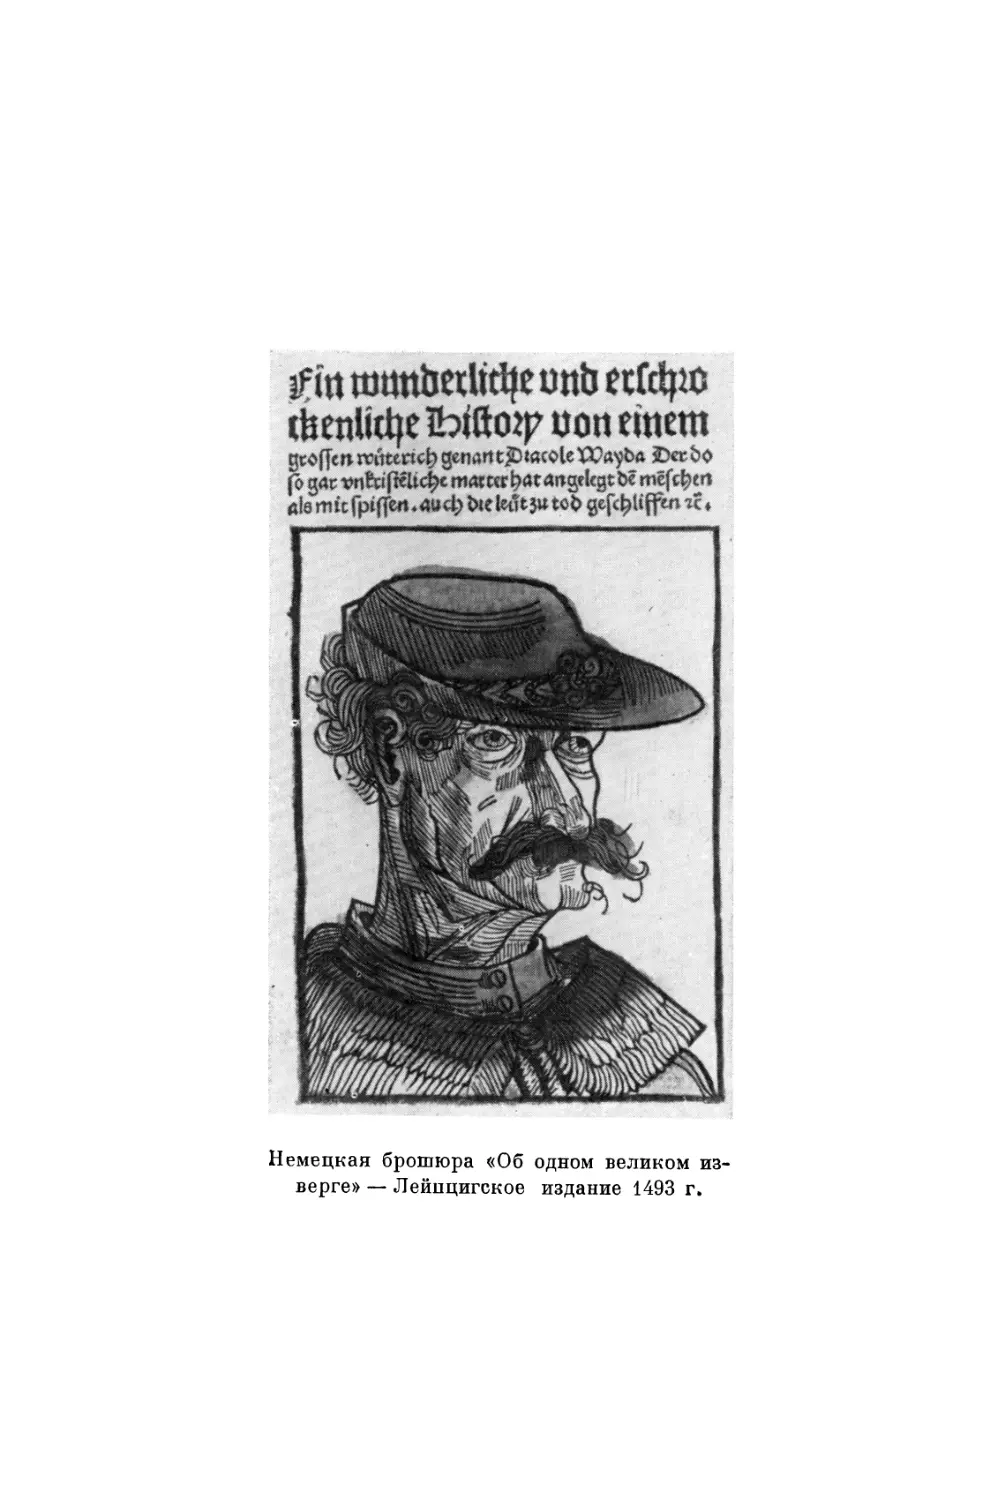 Вклейка. Немецкая брошюра «Об одном великом изверге» - лейпцигское издание - 1493 г.